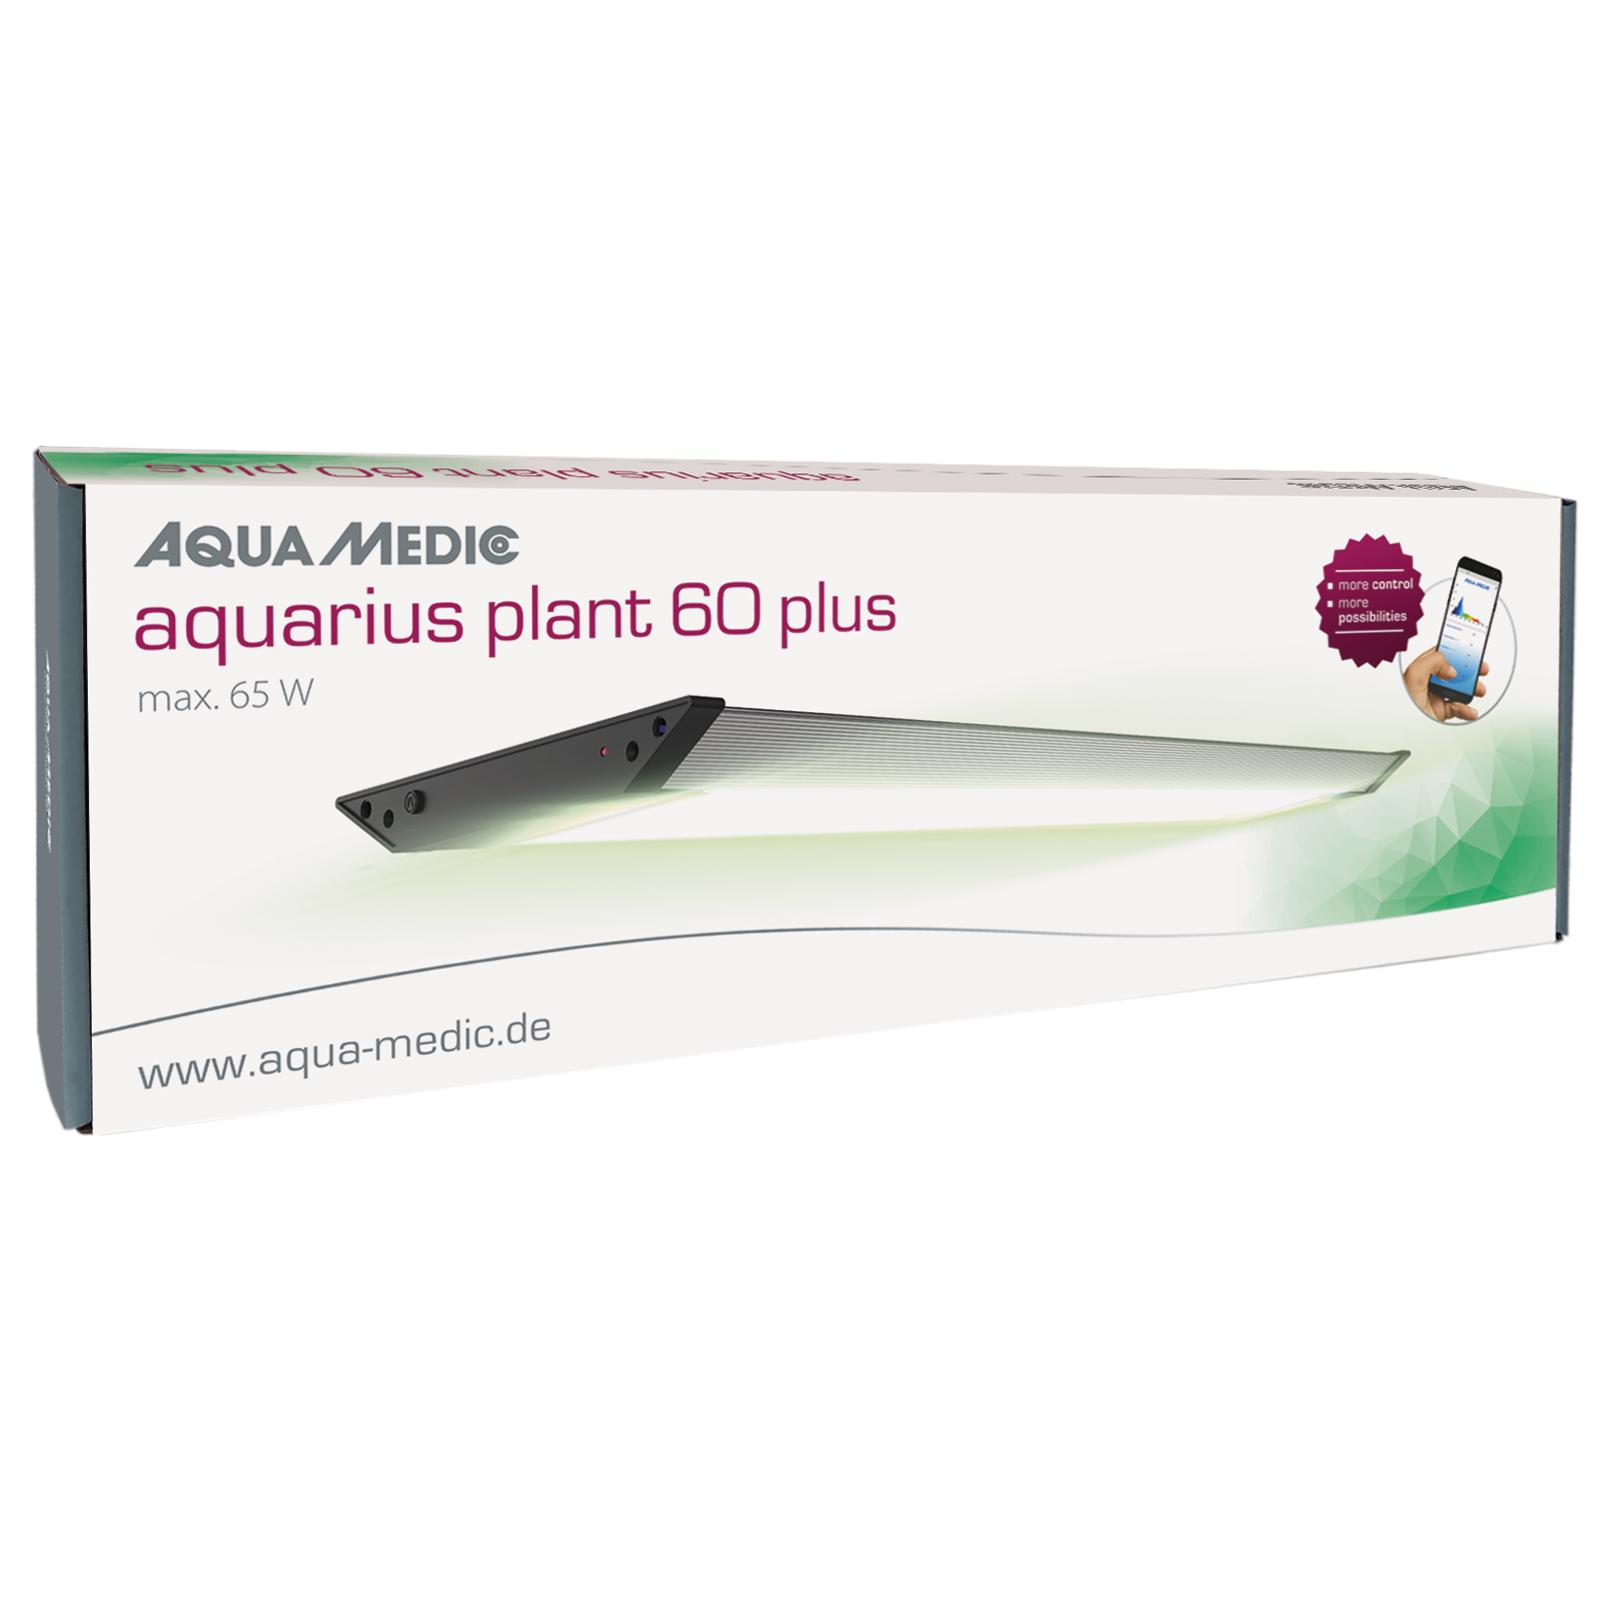 Aqua Medic aquarius plant PLUS